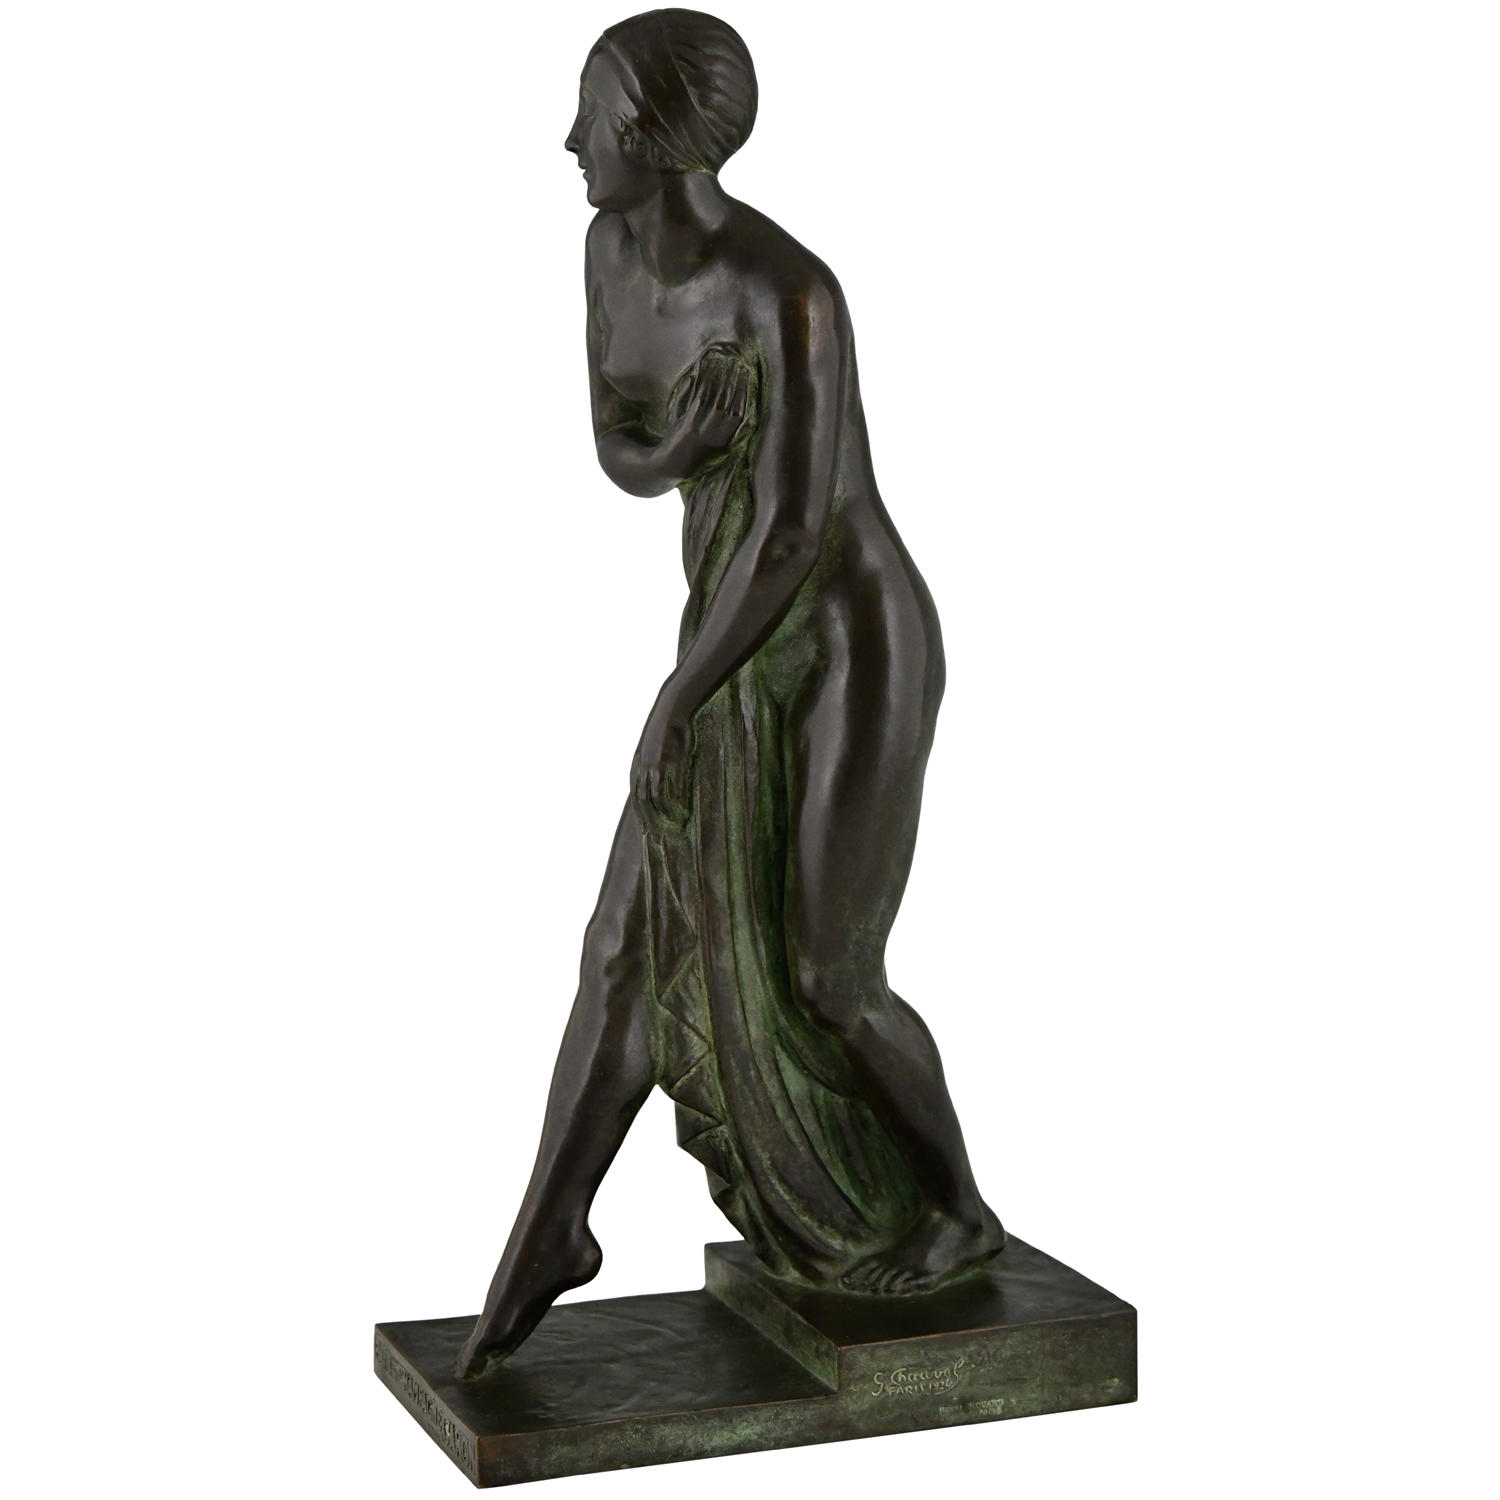 Art Deco bronze sculpture nude Chauvel Bain de Champagne